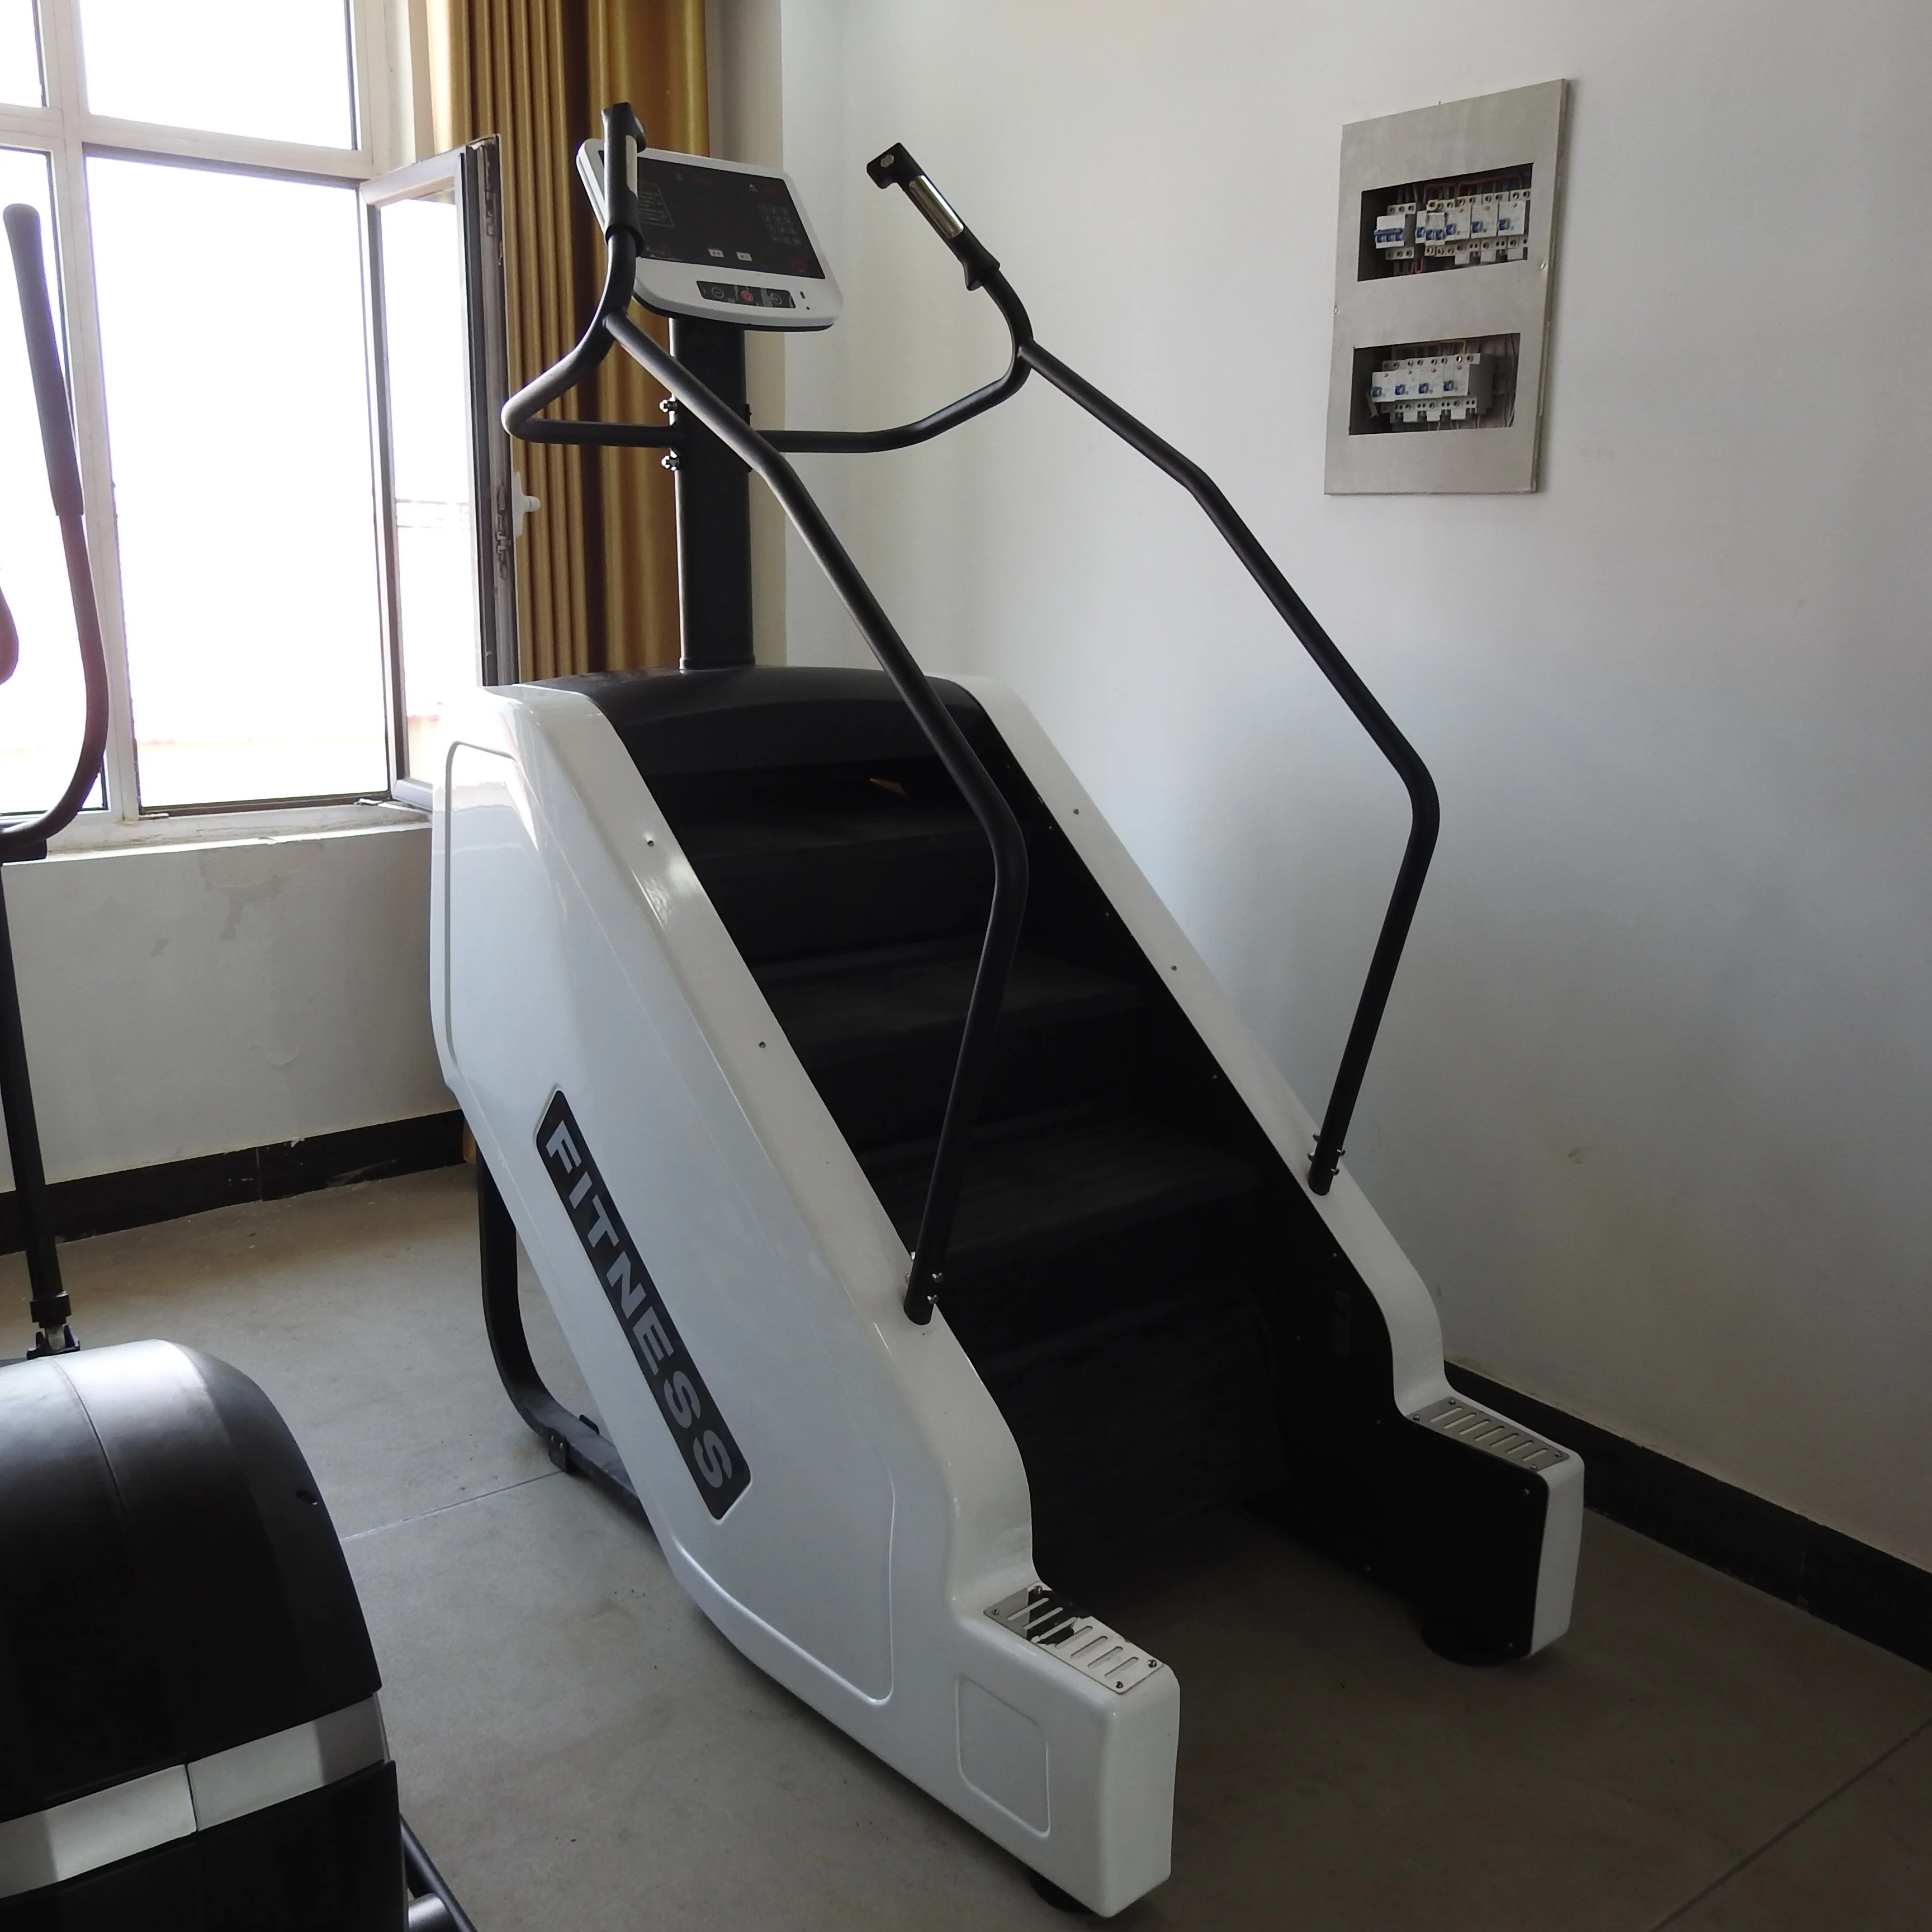 良好的设计健身房健身楼梯大师,高品质销售有氧训练步步机爬楼梯